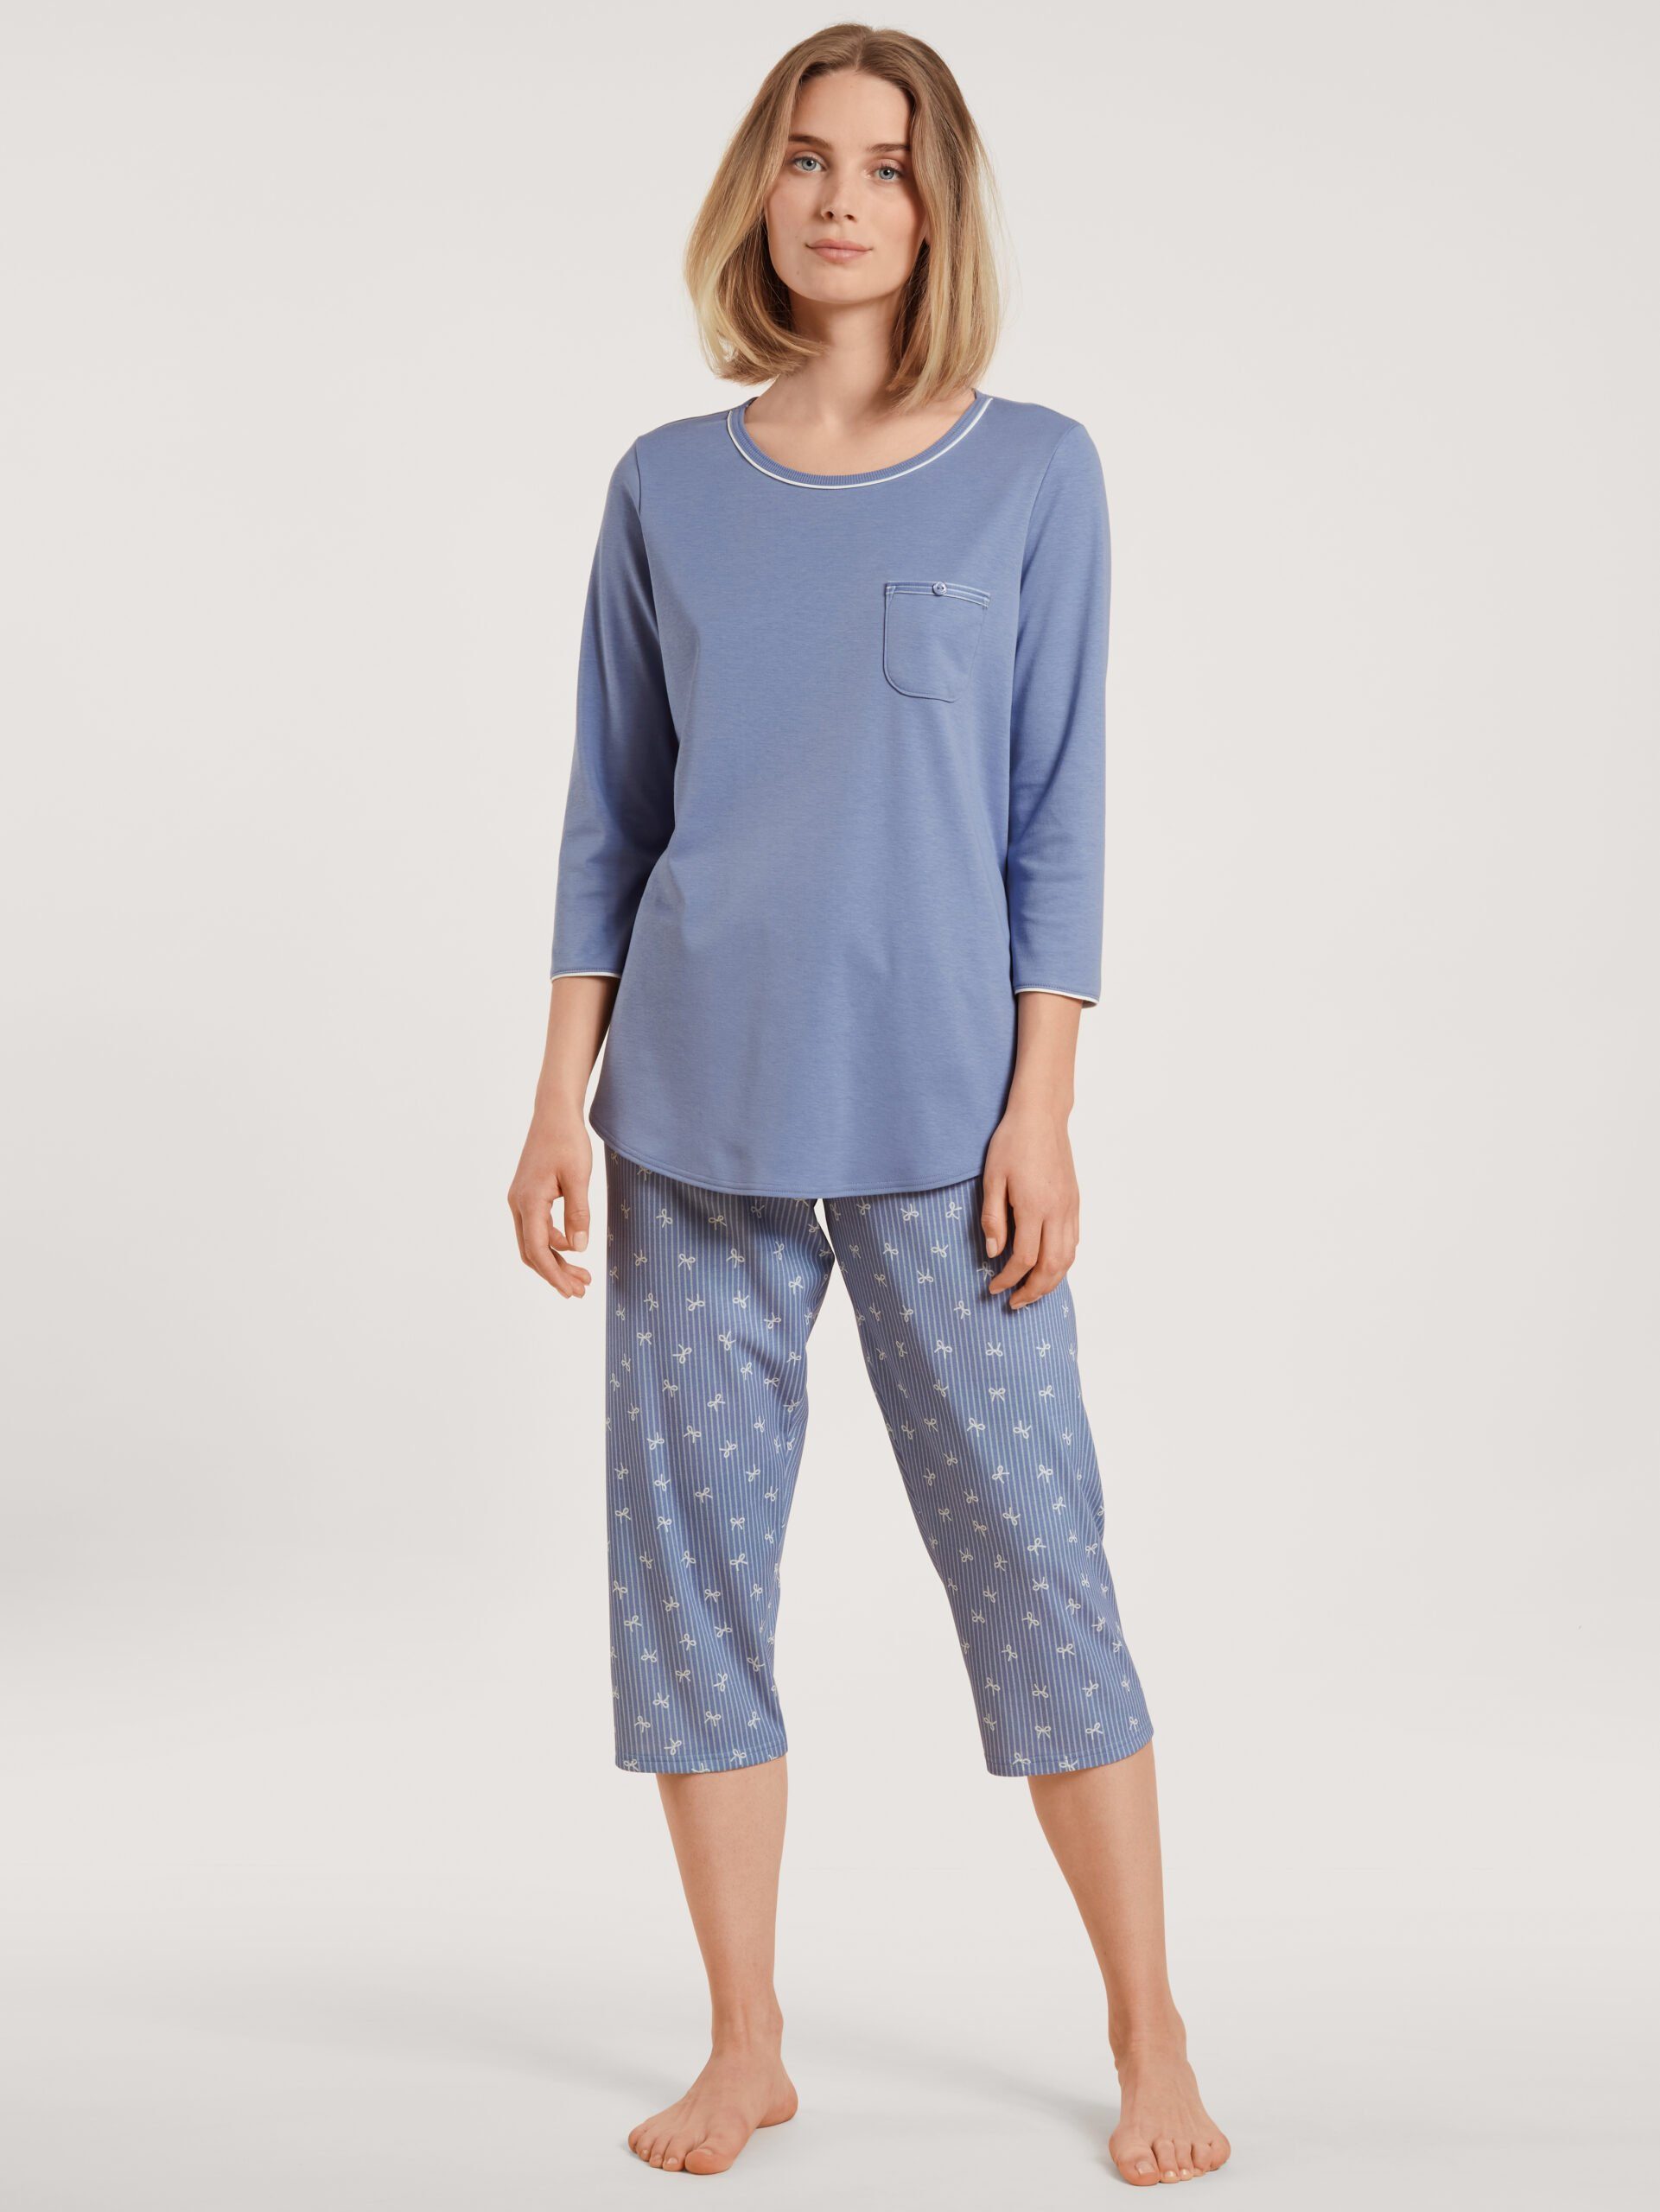 CALIDA Capri-Pyjama Damen blue Stück) provence 1 (1 tlg., Calida 1 40236 Stück, Capripyjama